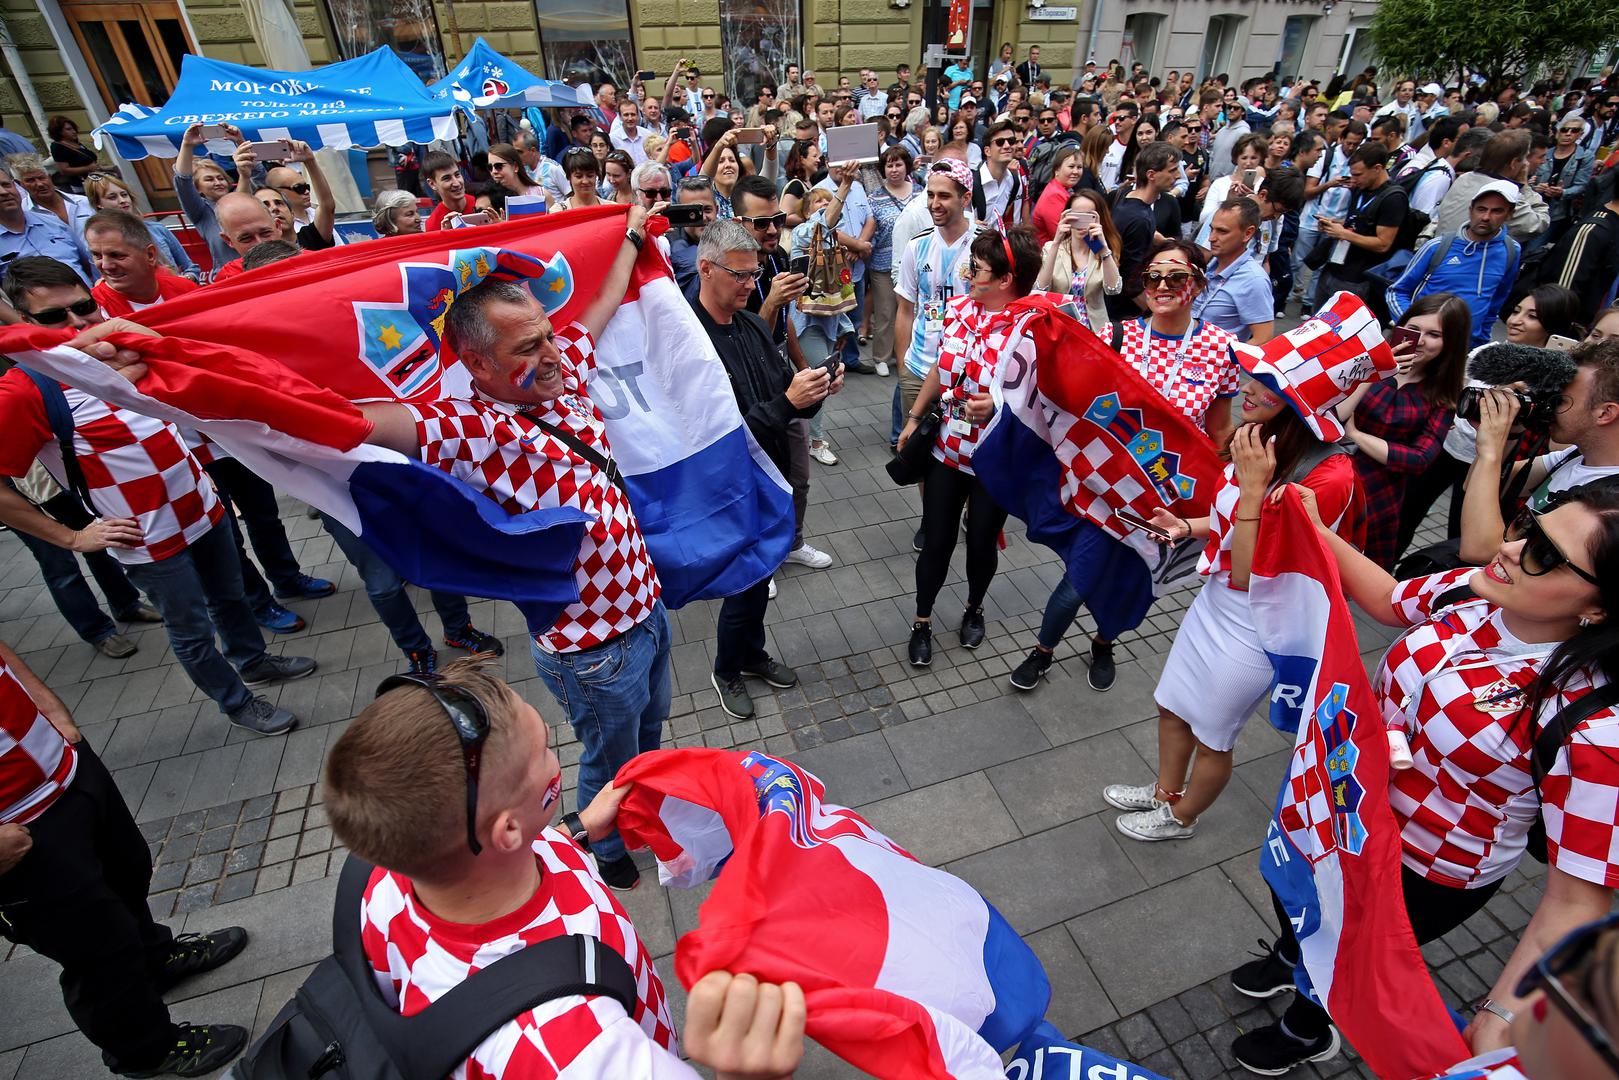 Hrvatski i argentinski navijači okupirali su Nižnji Novgorod, grad u kojem se večeras igra utakmica.

